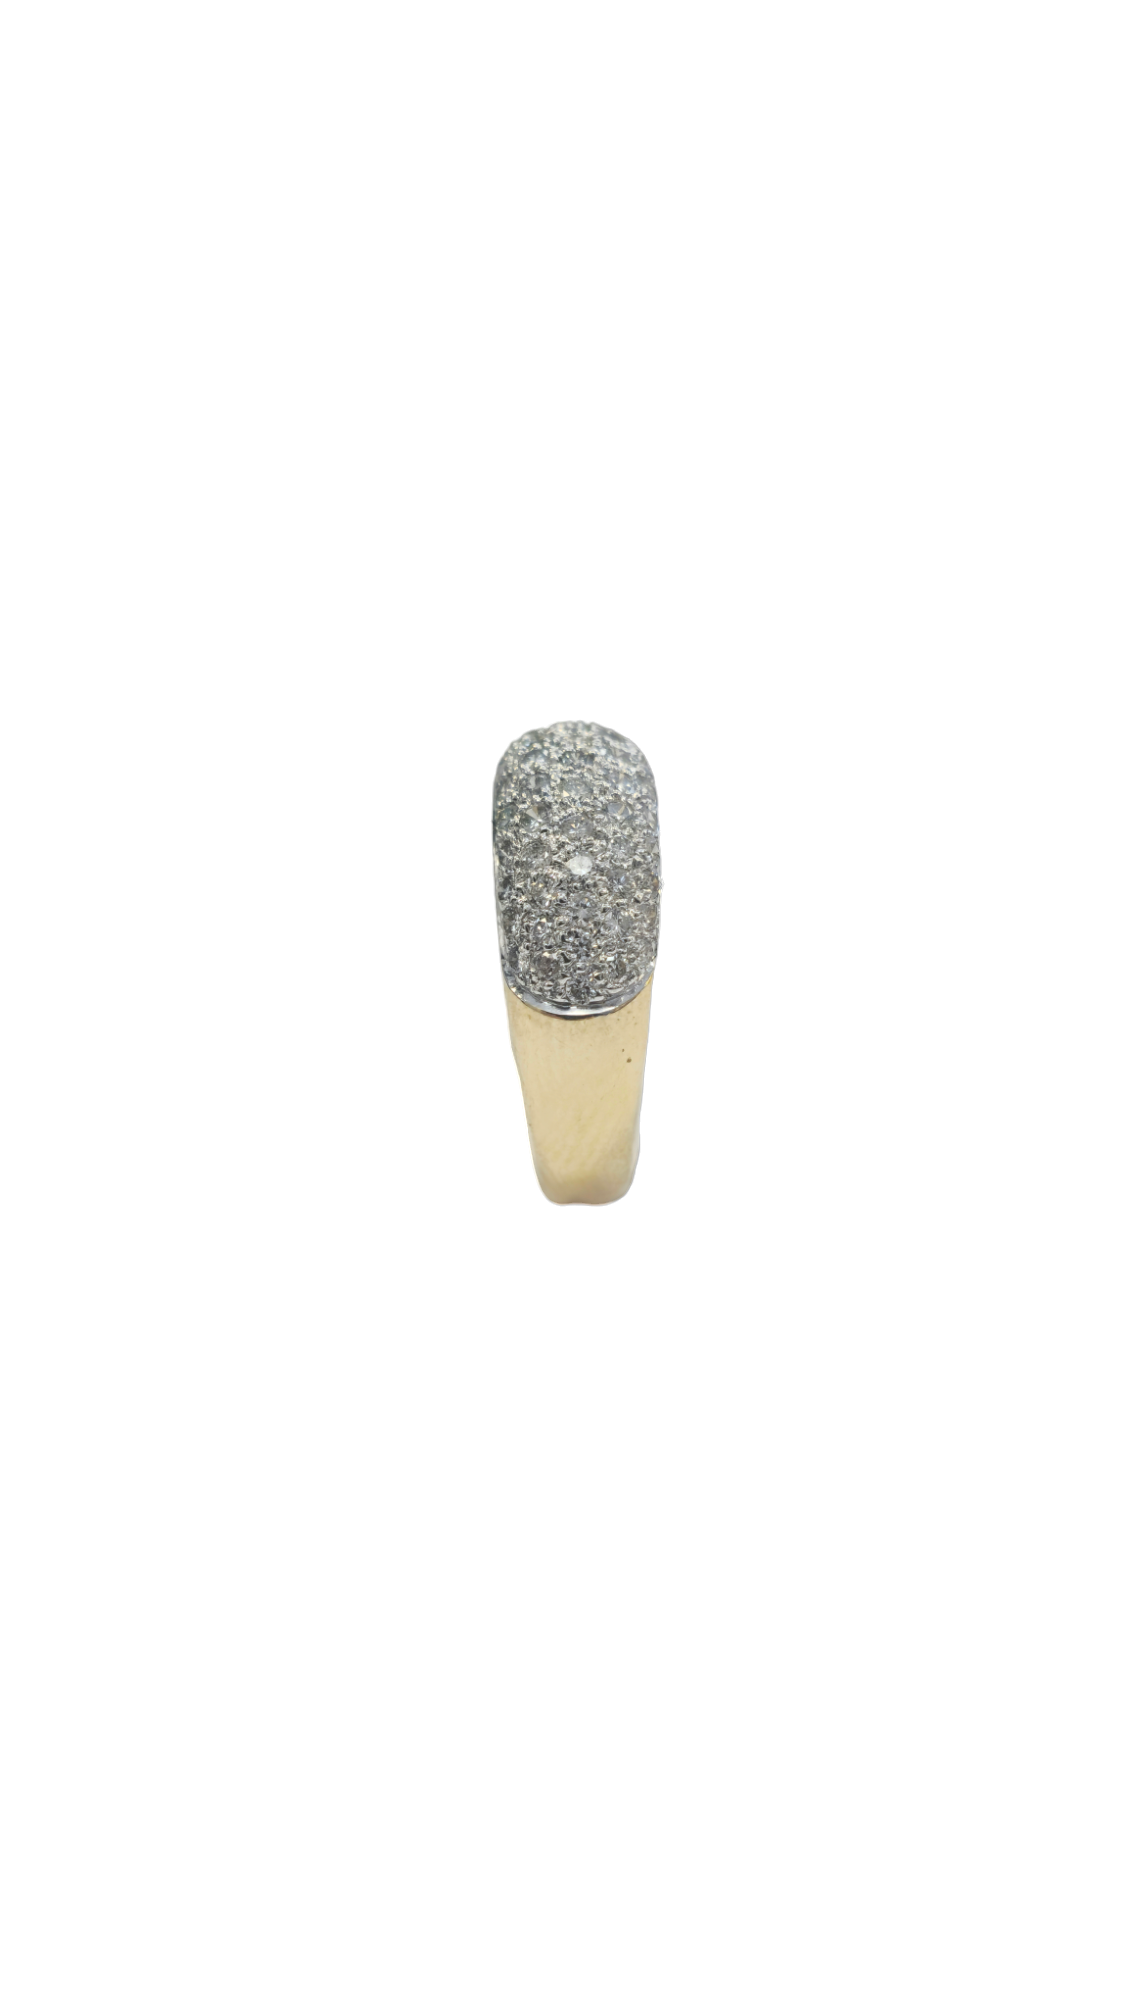 14-karat yellow/white gold pave diamond ring size 6.75(US)